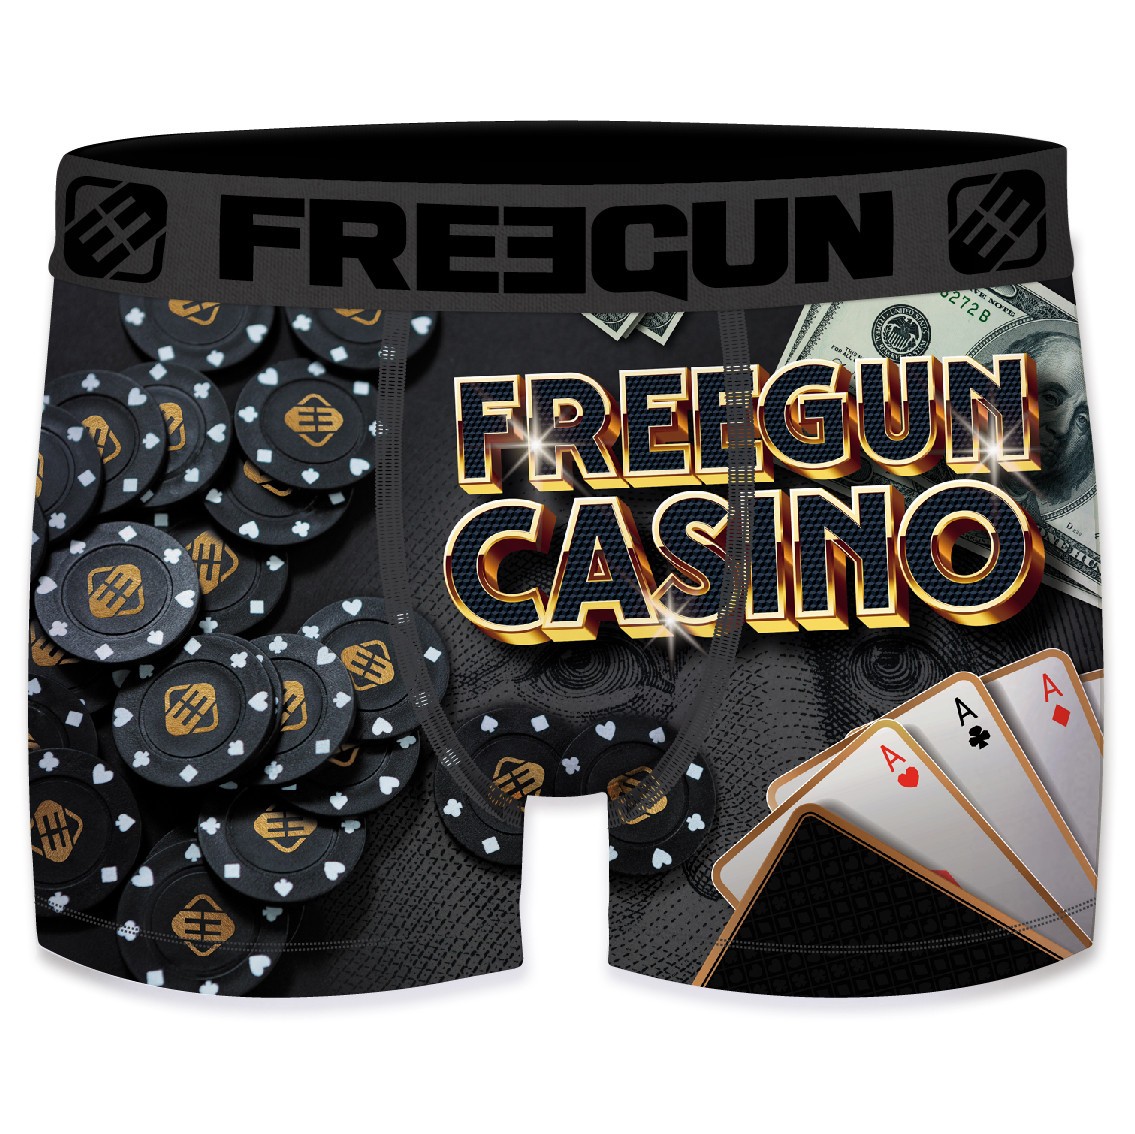 FREEGUN Boxer Garçon Casino